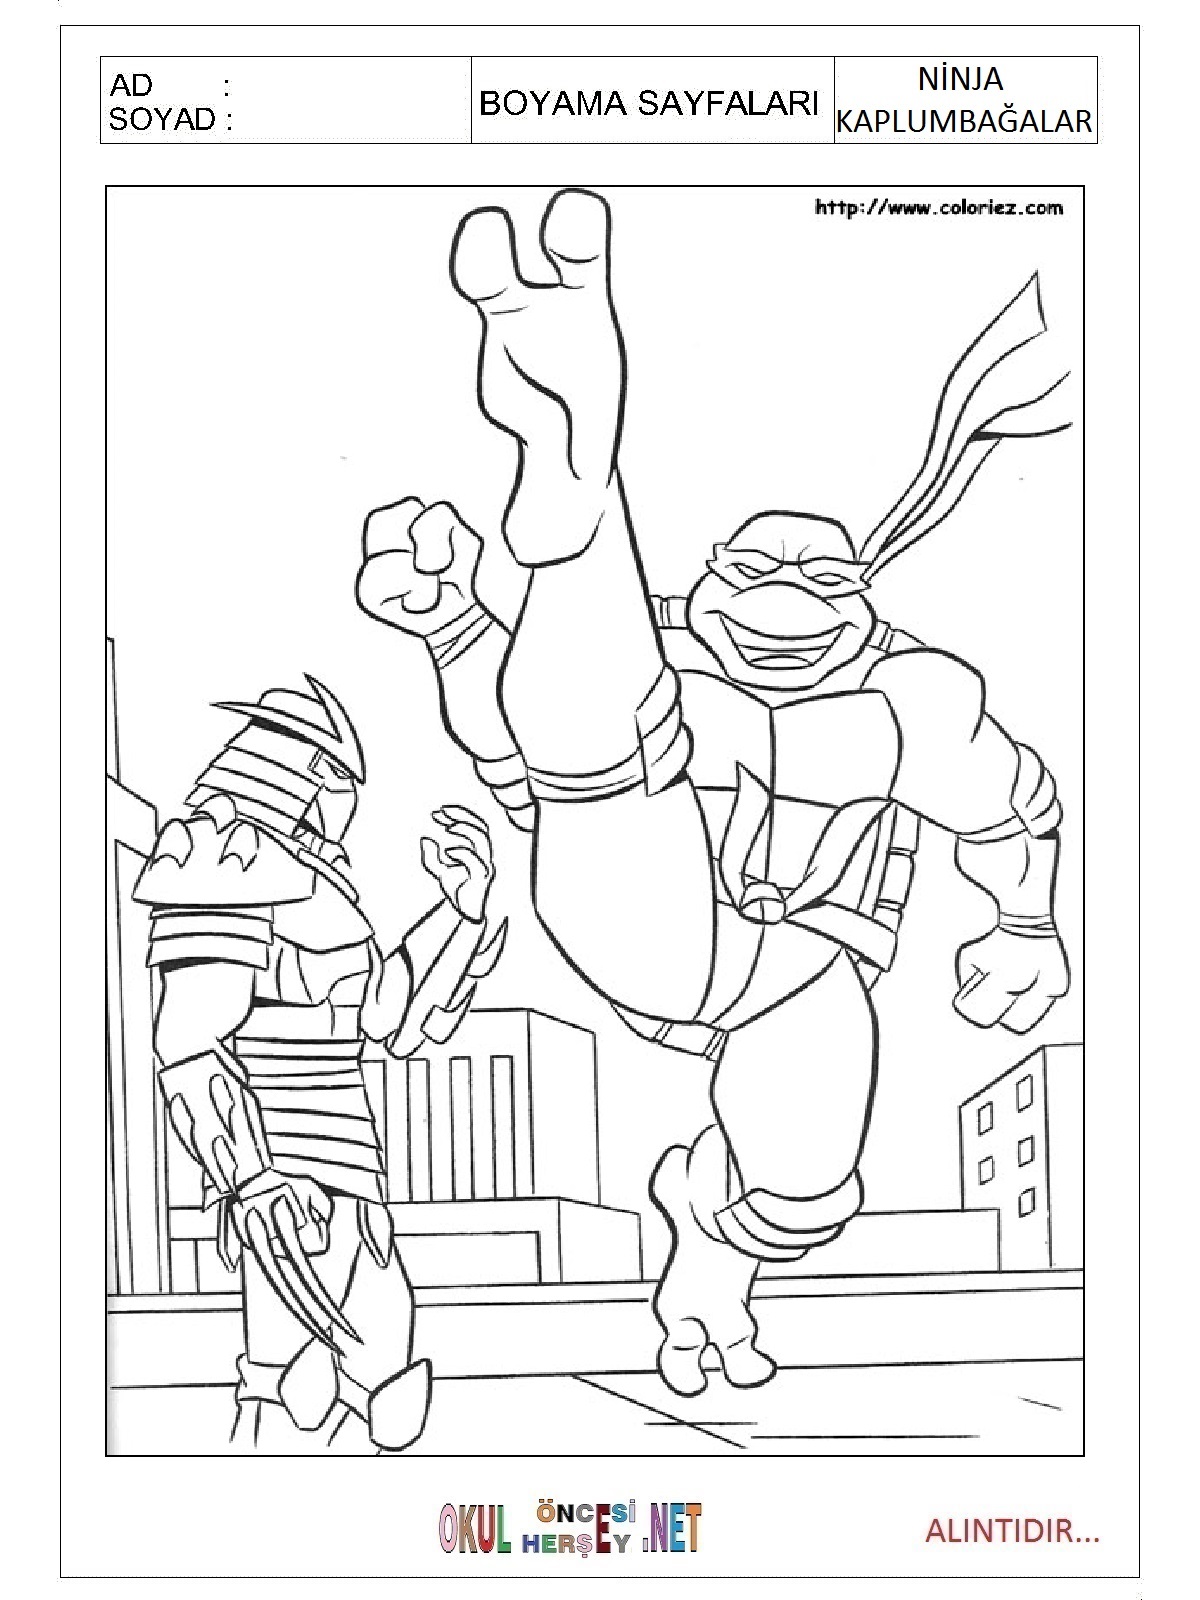 Ninja Kaplumbağalar boyama sayfası 4